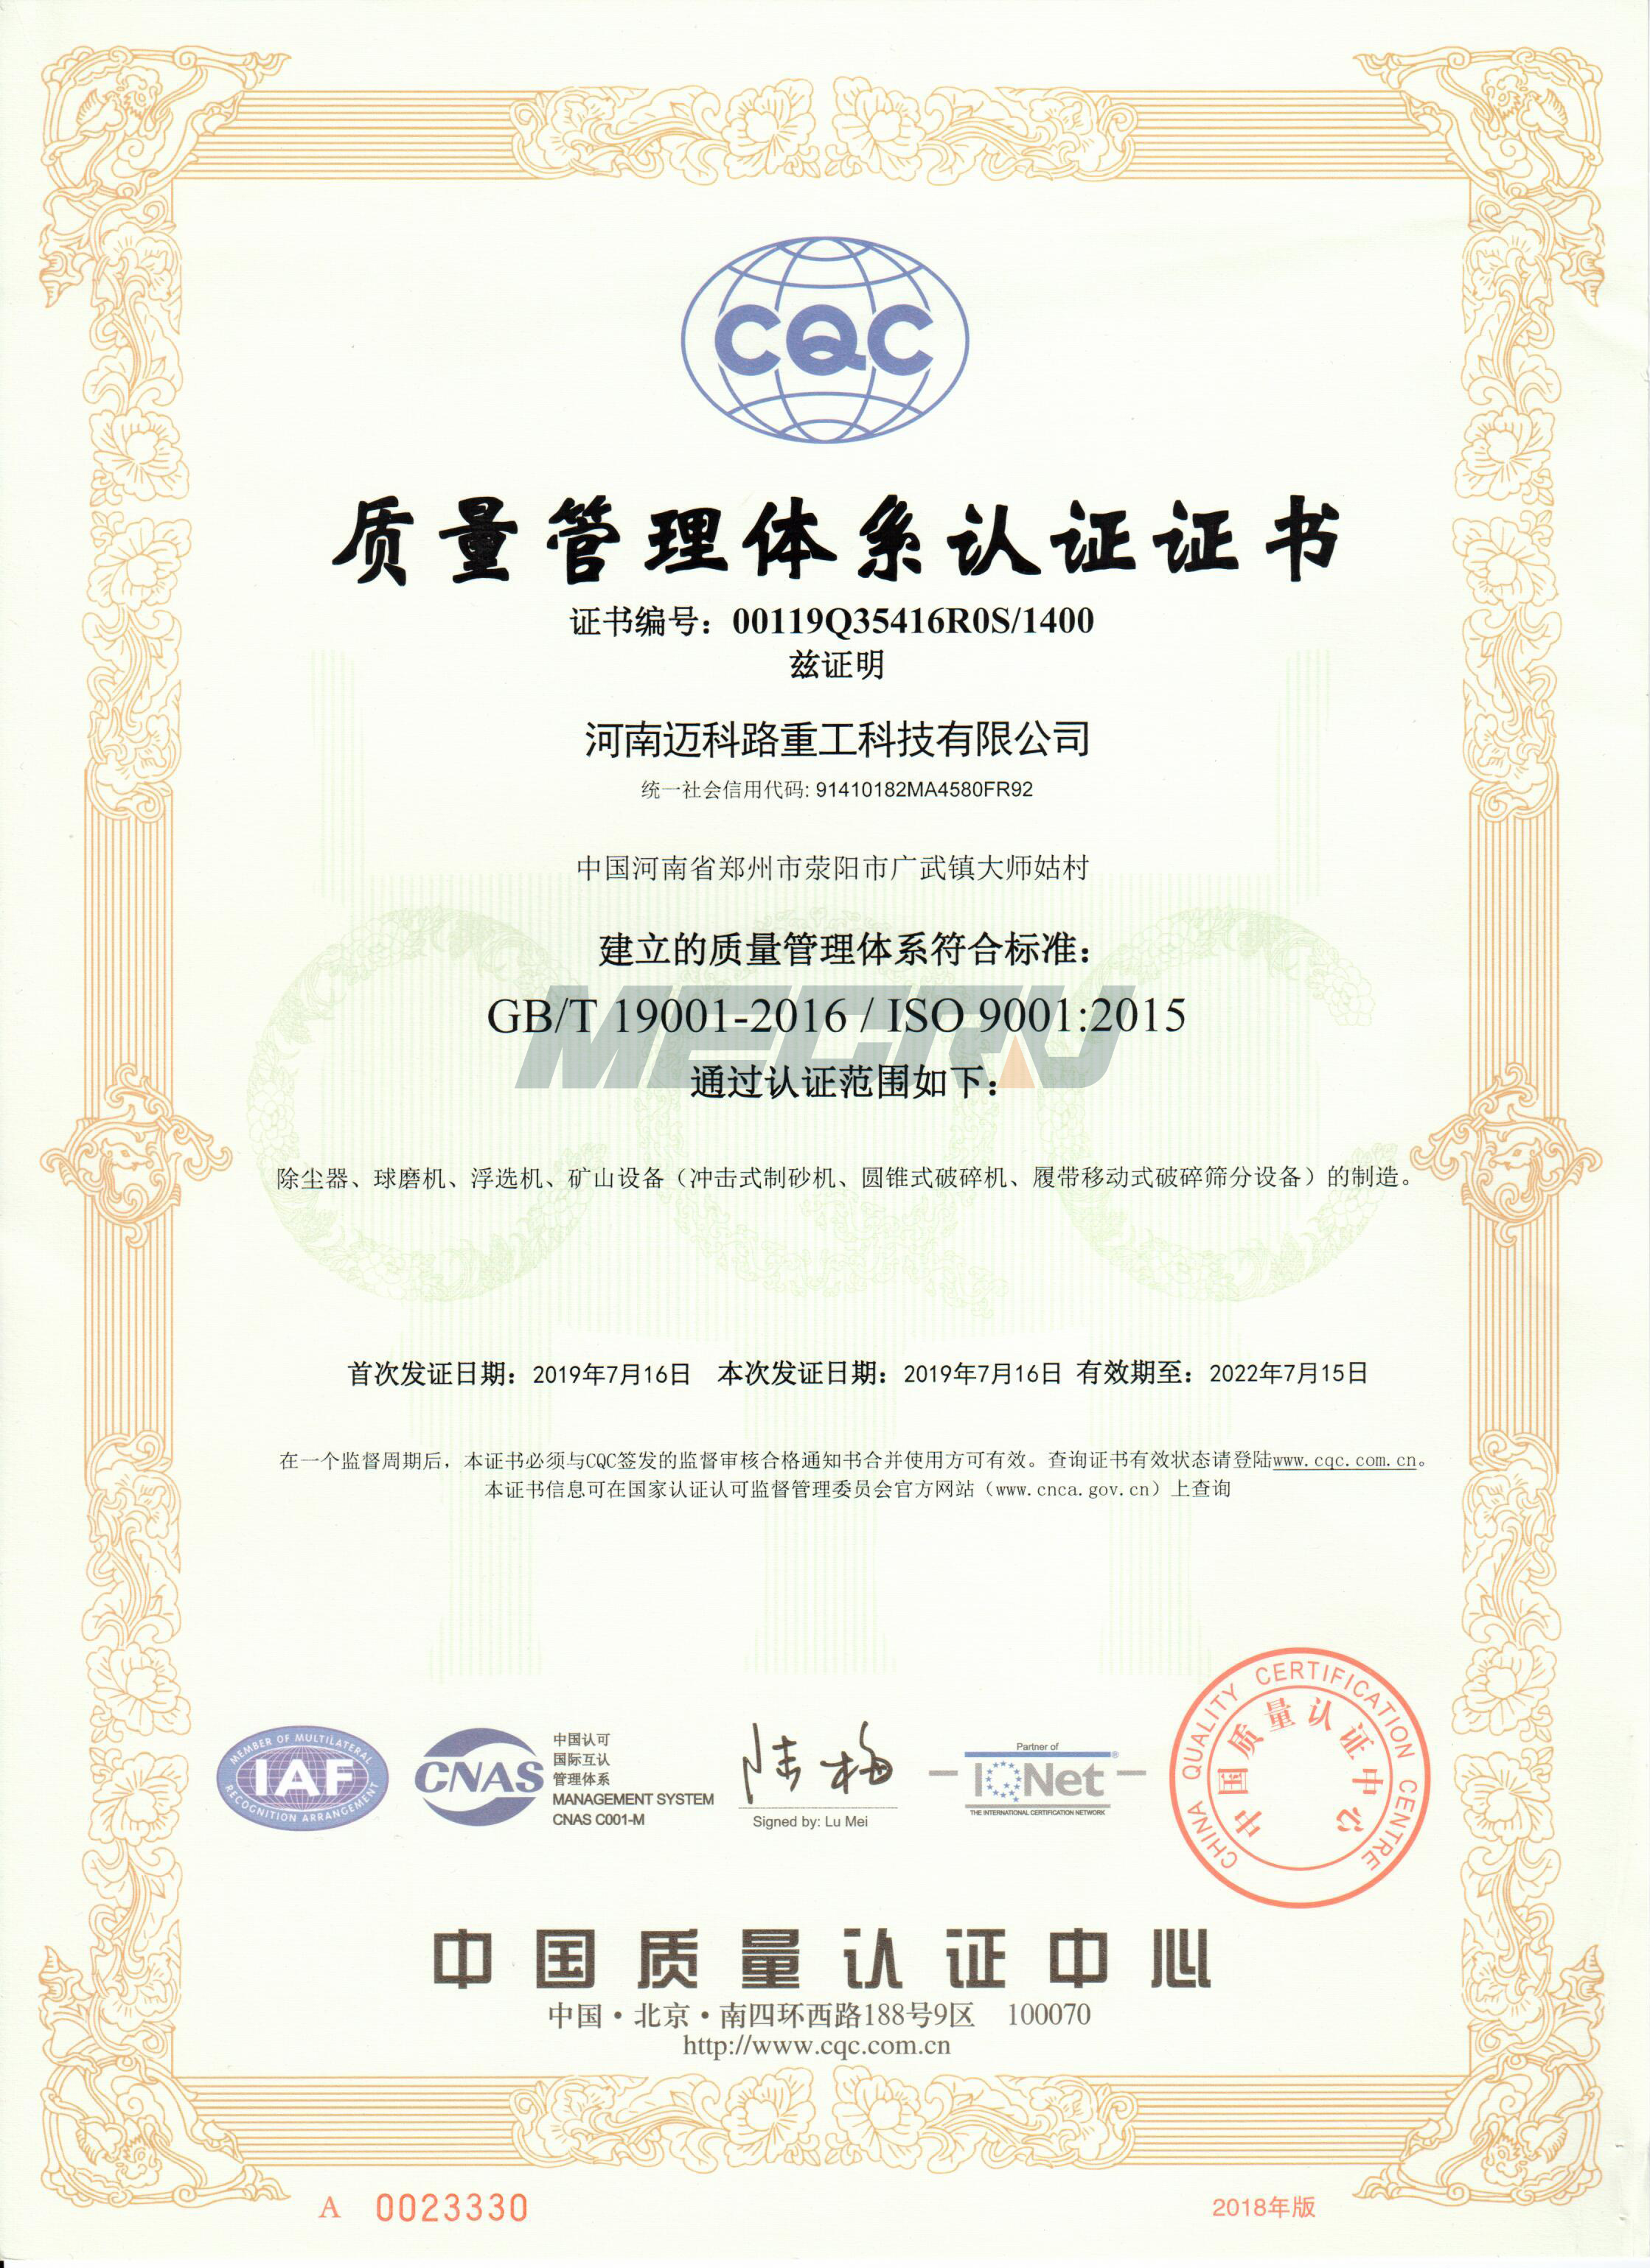 Certificering af kvalitetsstyringssystem